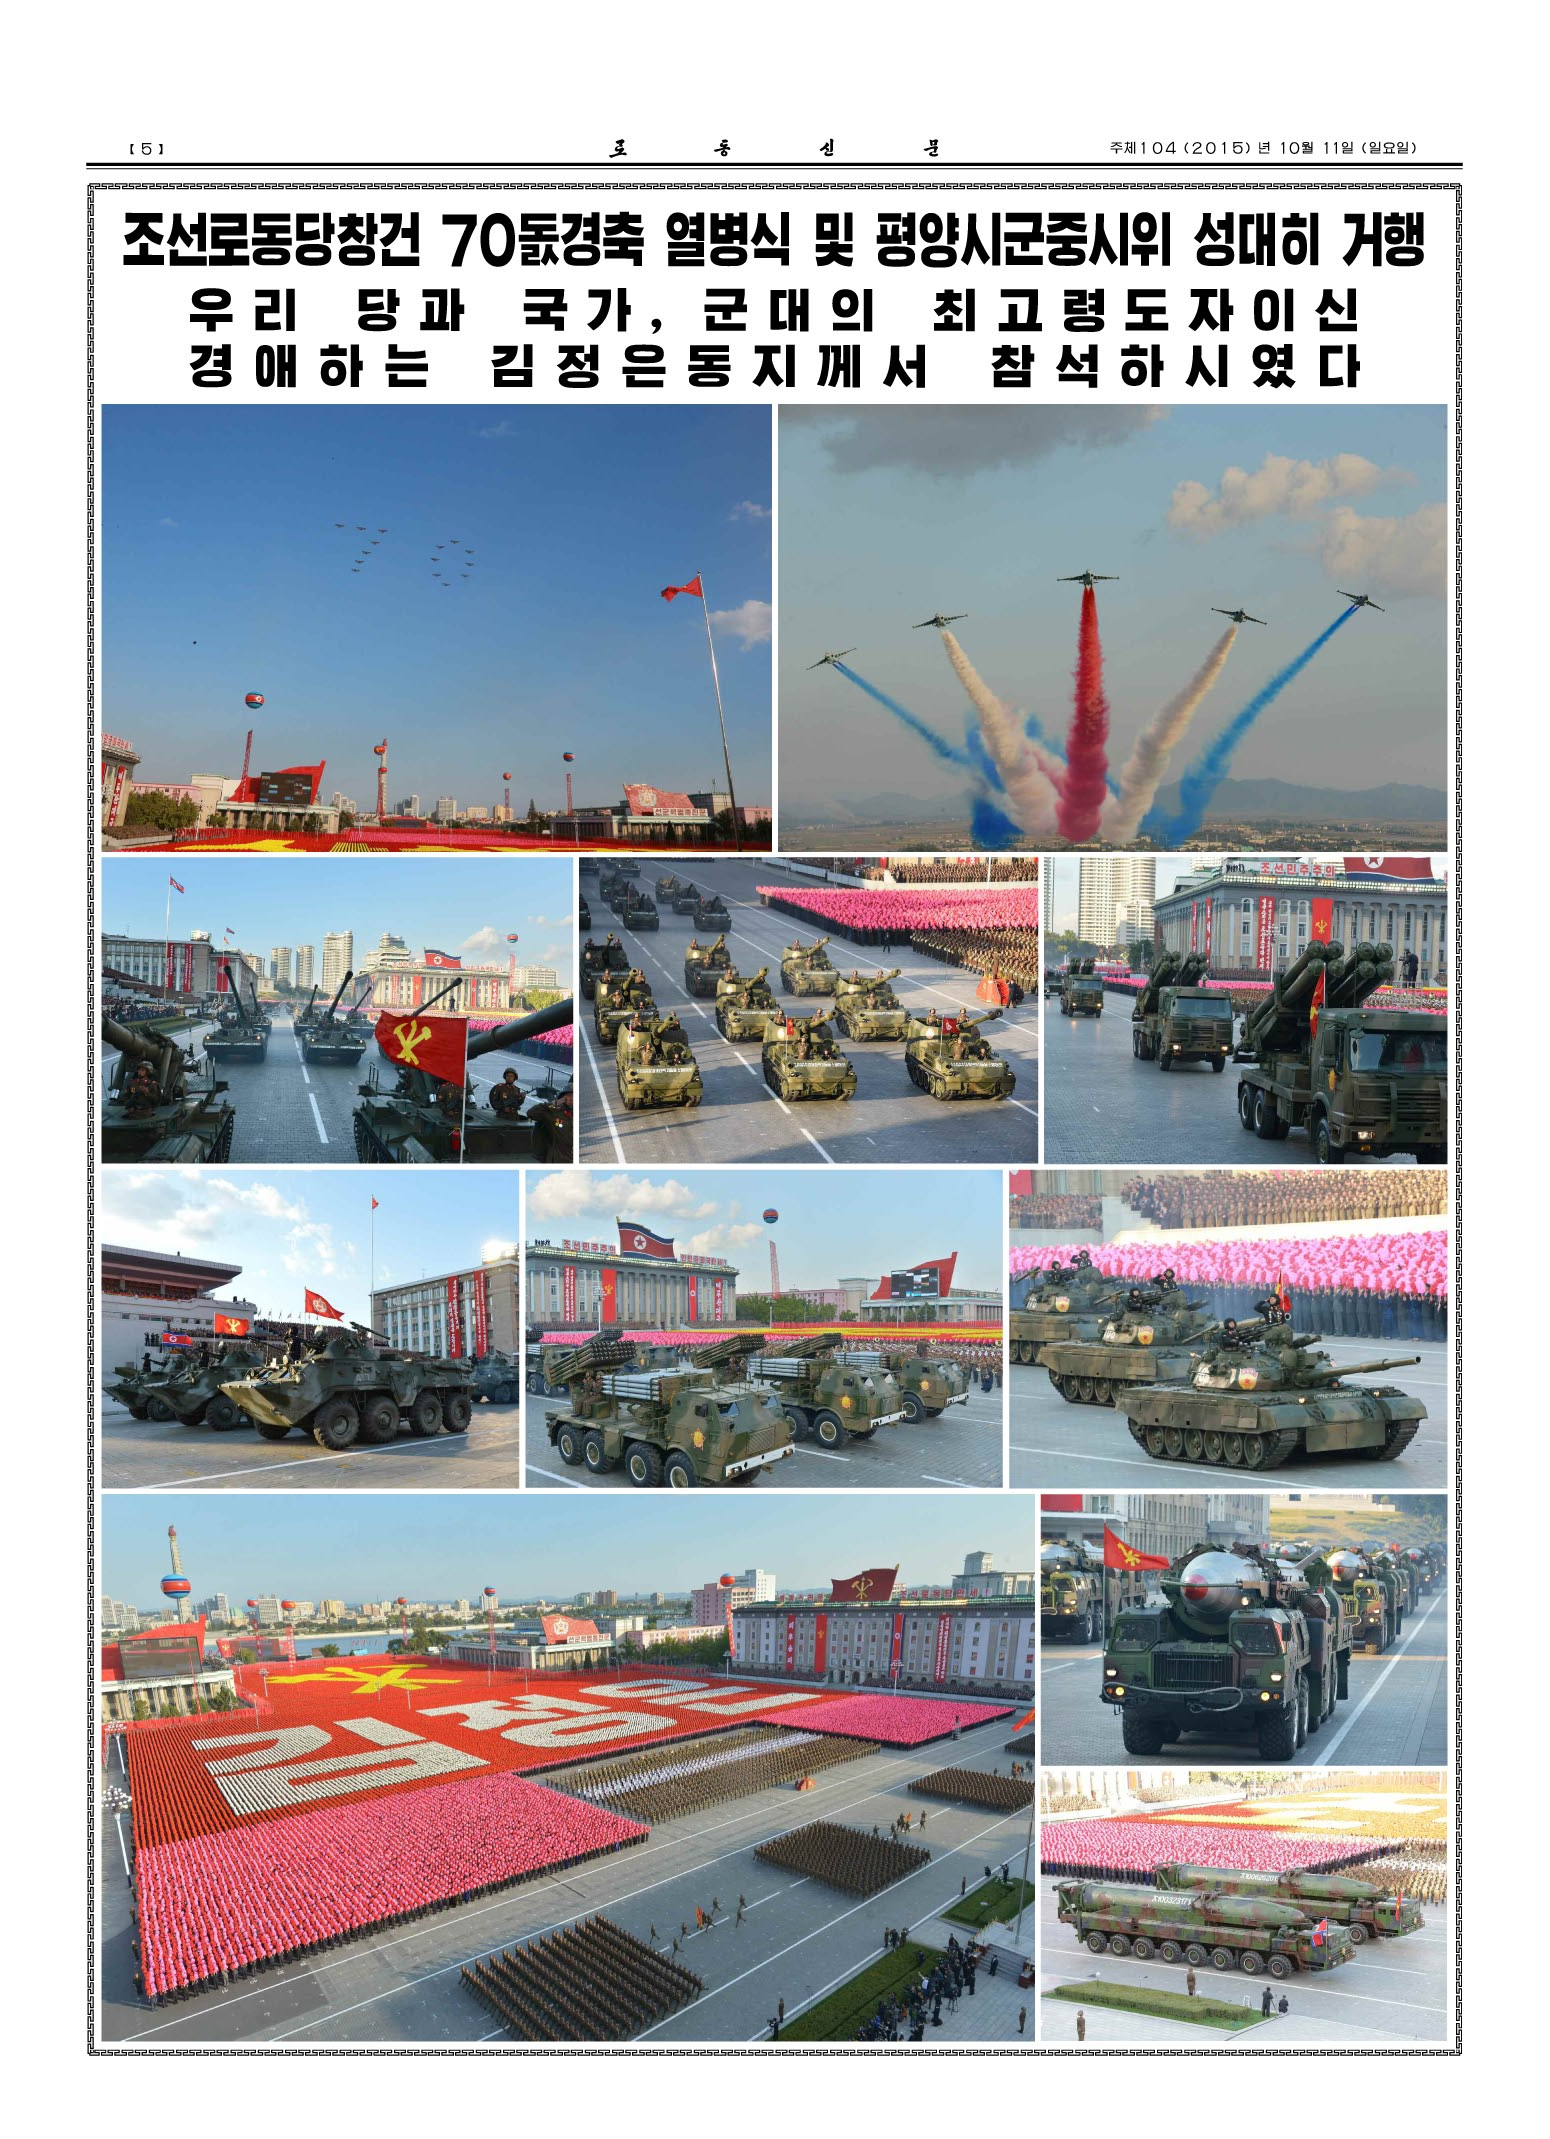 2015년 10월 10일 열린 노동당 창건 70주년 기념 열병식 관련 북한 노동신문 보도